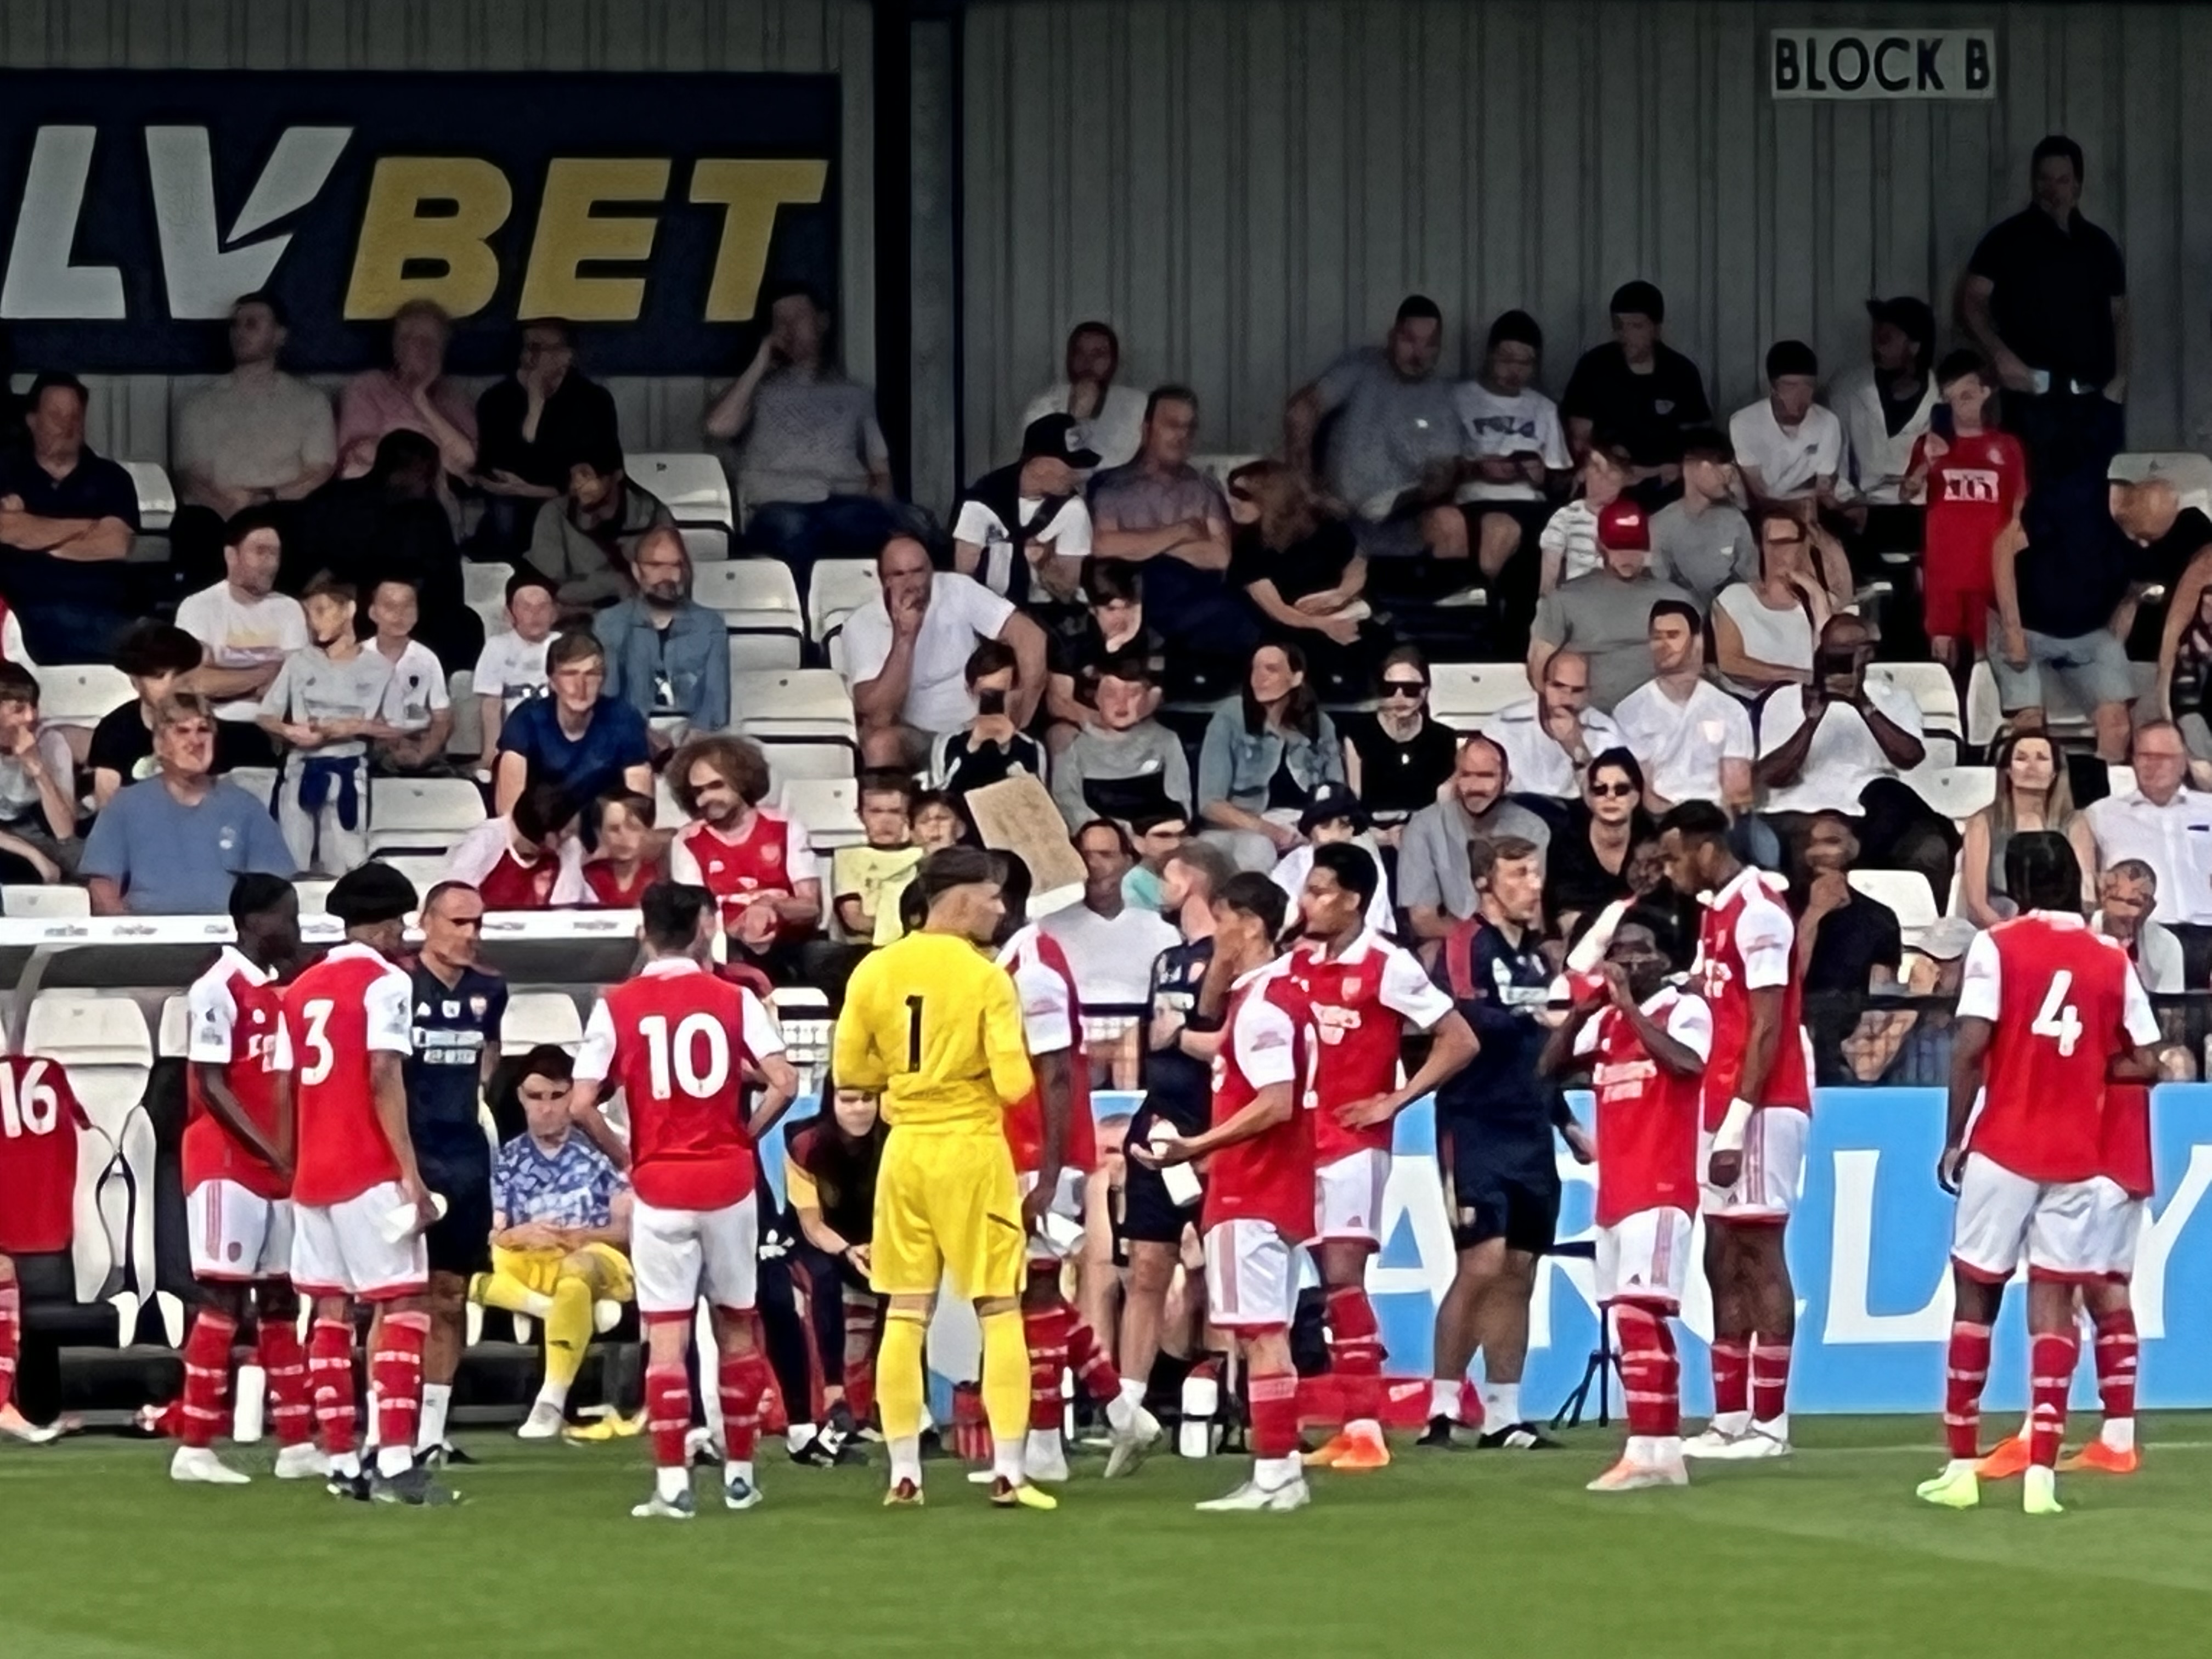 Player Ratings: Boreham Wood 3-2 Arsenal XI at Meadow Park 